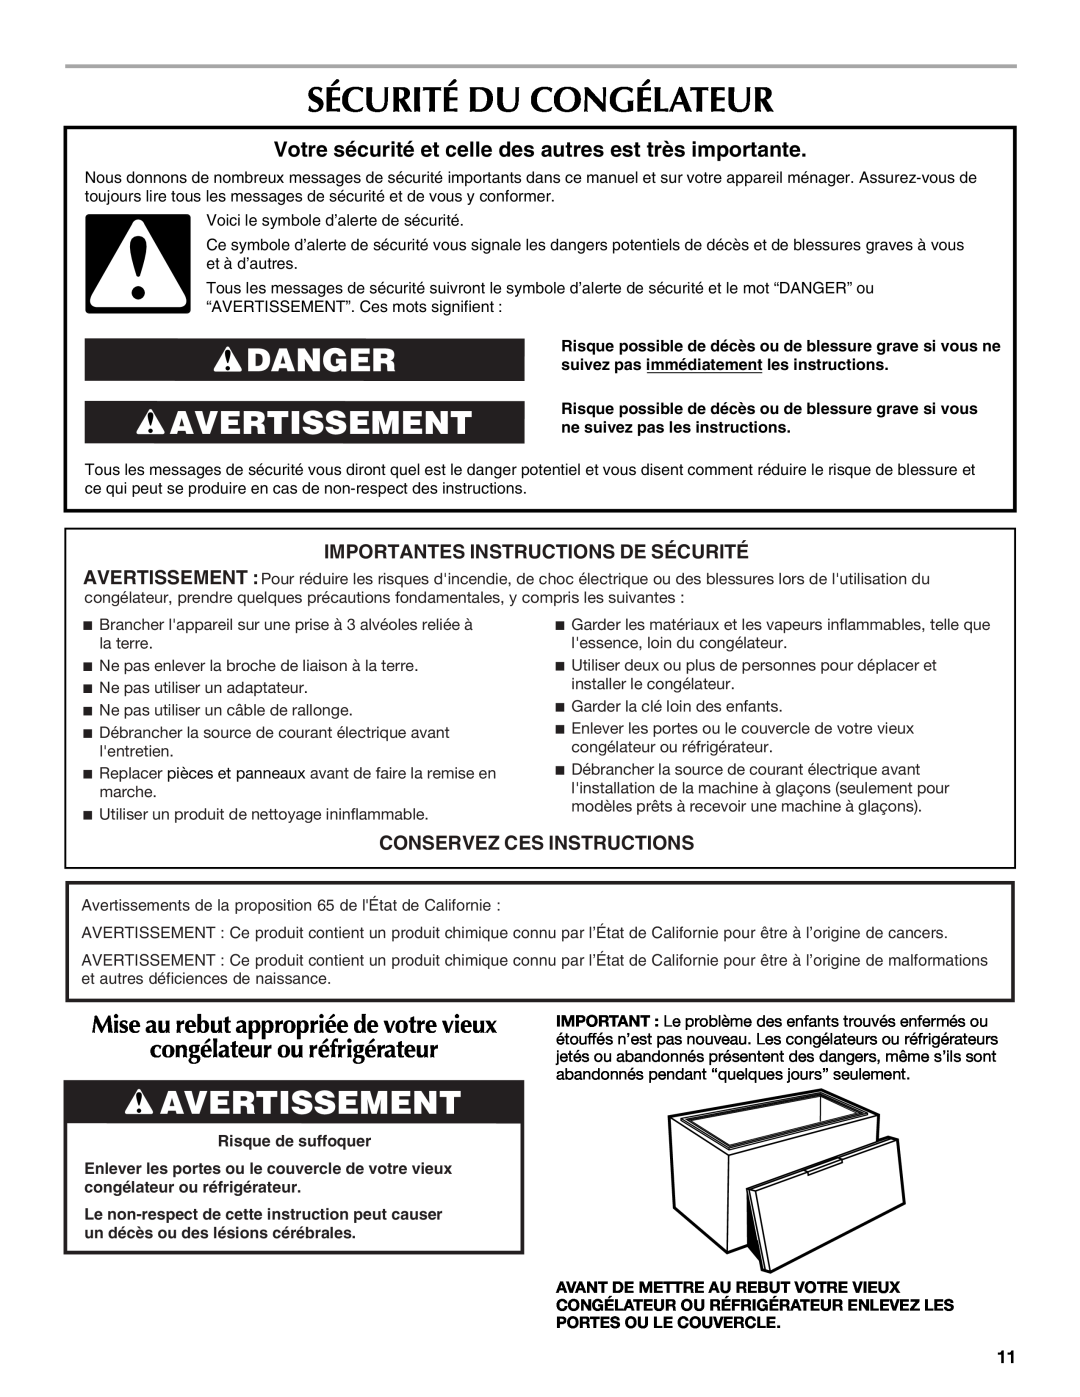 Maytag W10326795A Sécurité Du Congélateur, Danger Avertissement, congélateur ou réfrigérateur, Conservez Ces Instructions 